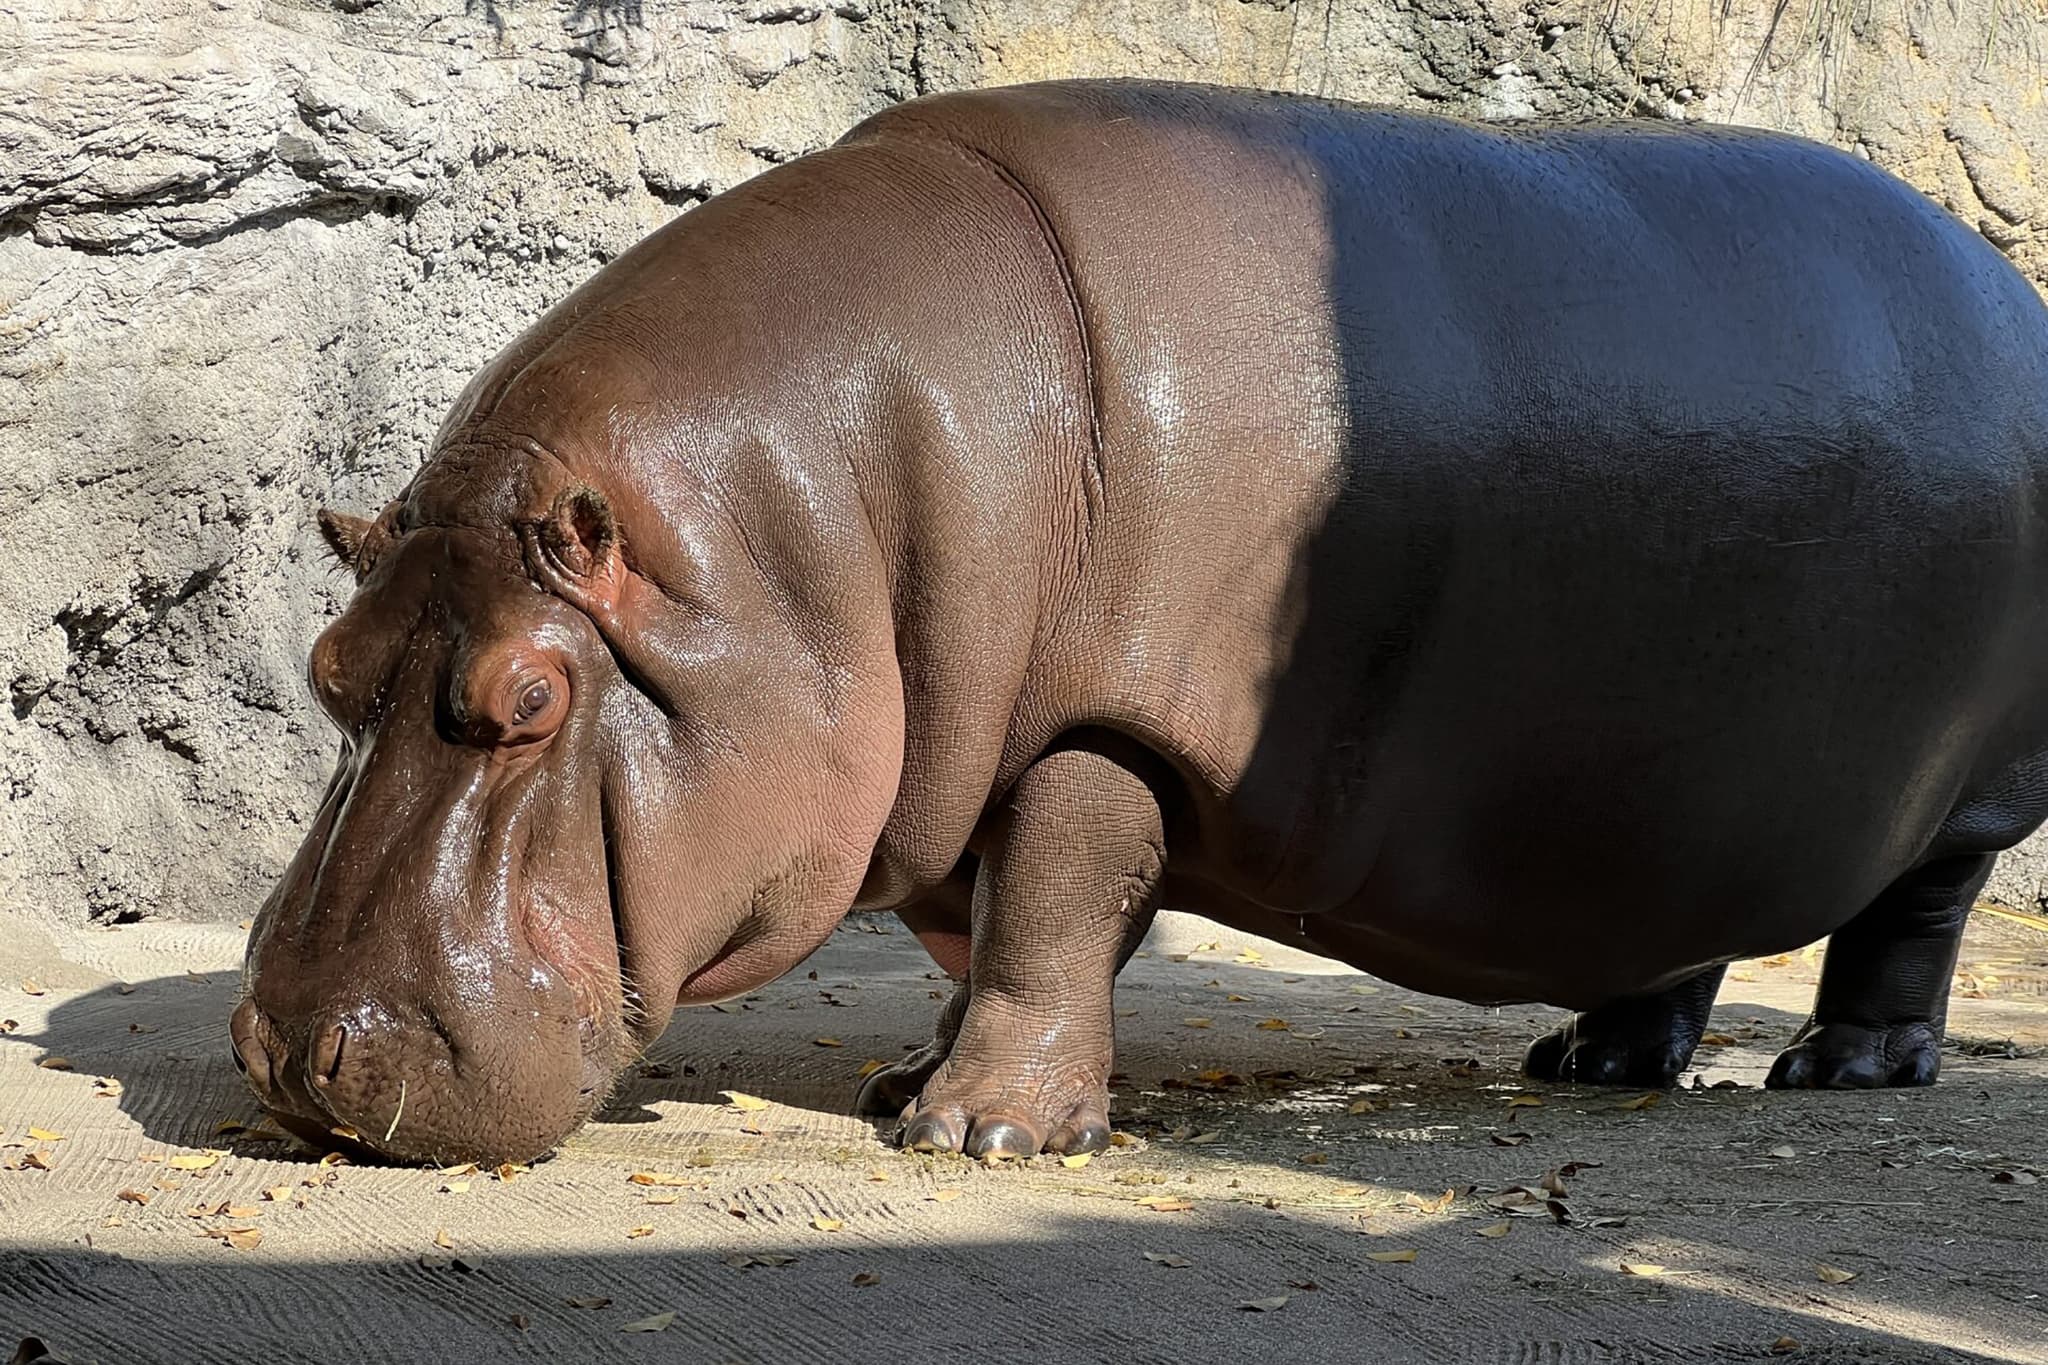 japon: dans un zoo, un hippopotame pris par erreur pour un mâle pendant des années